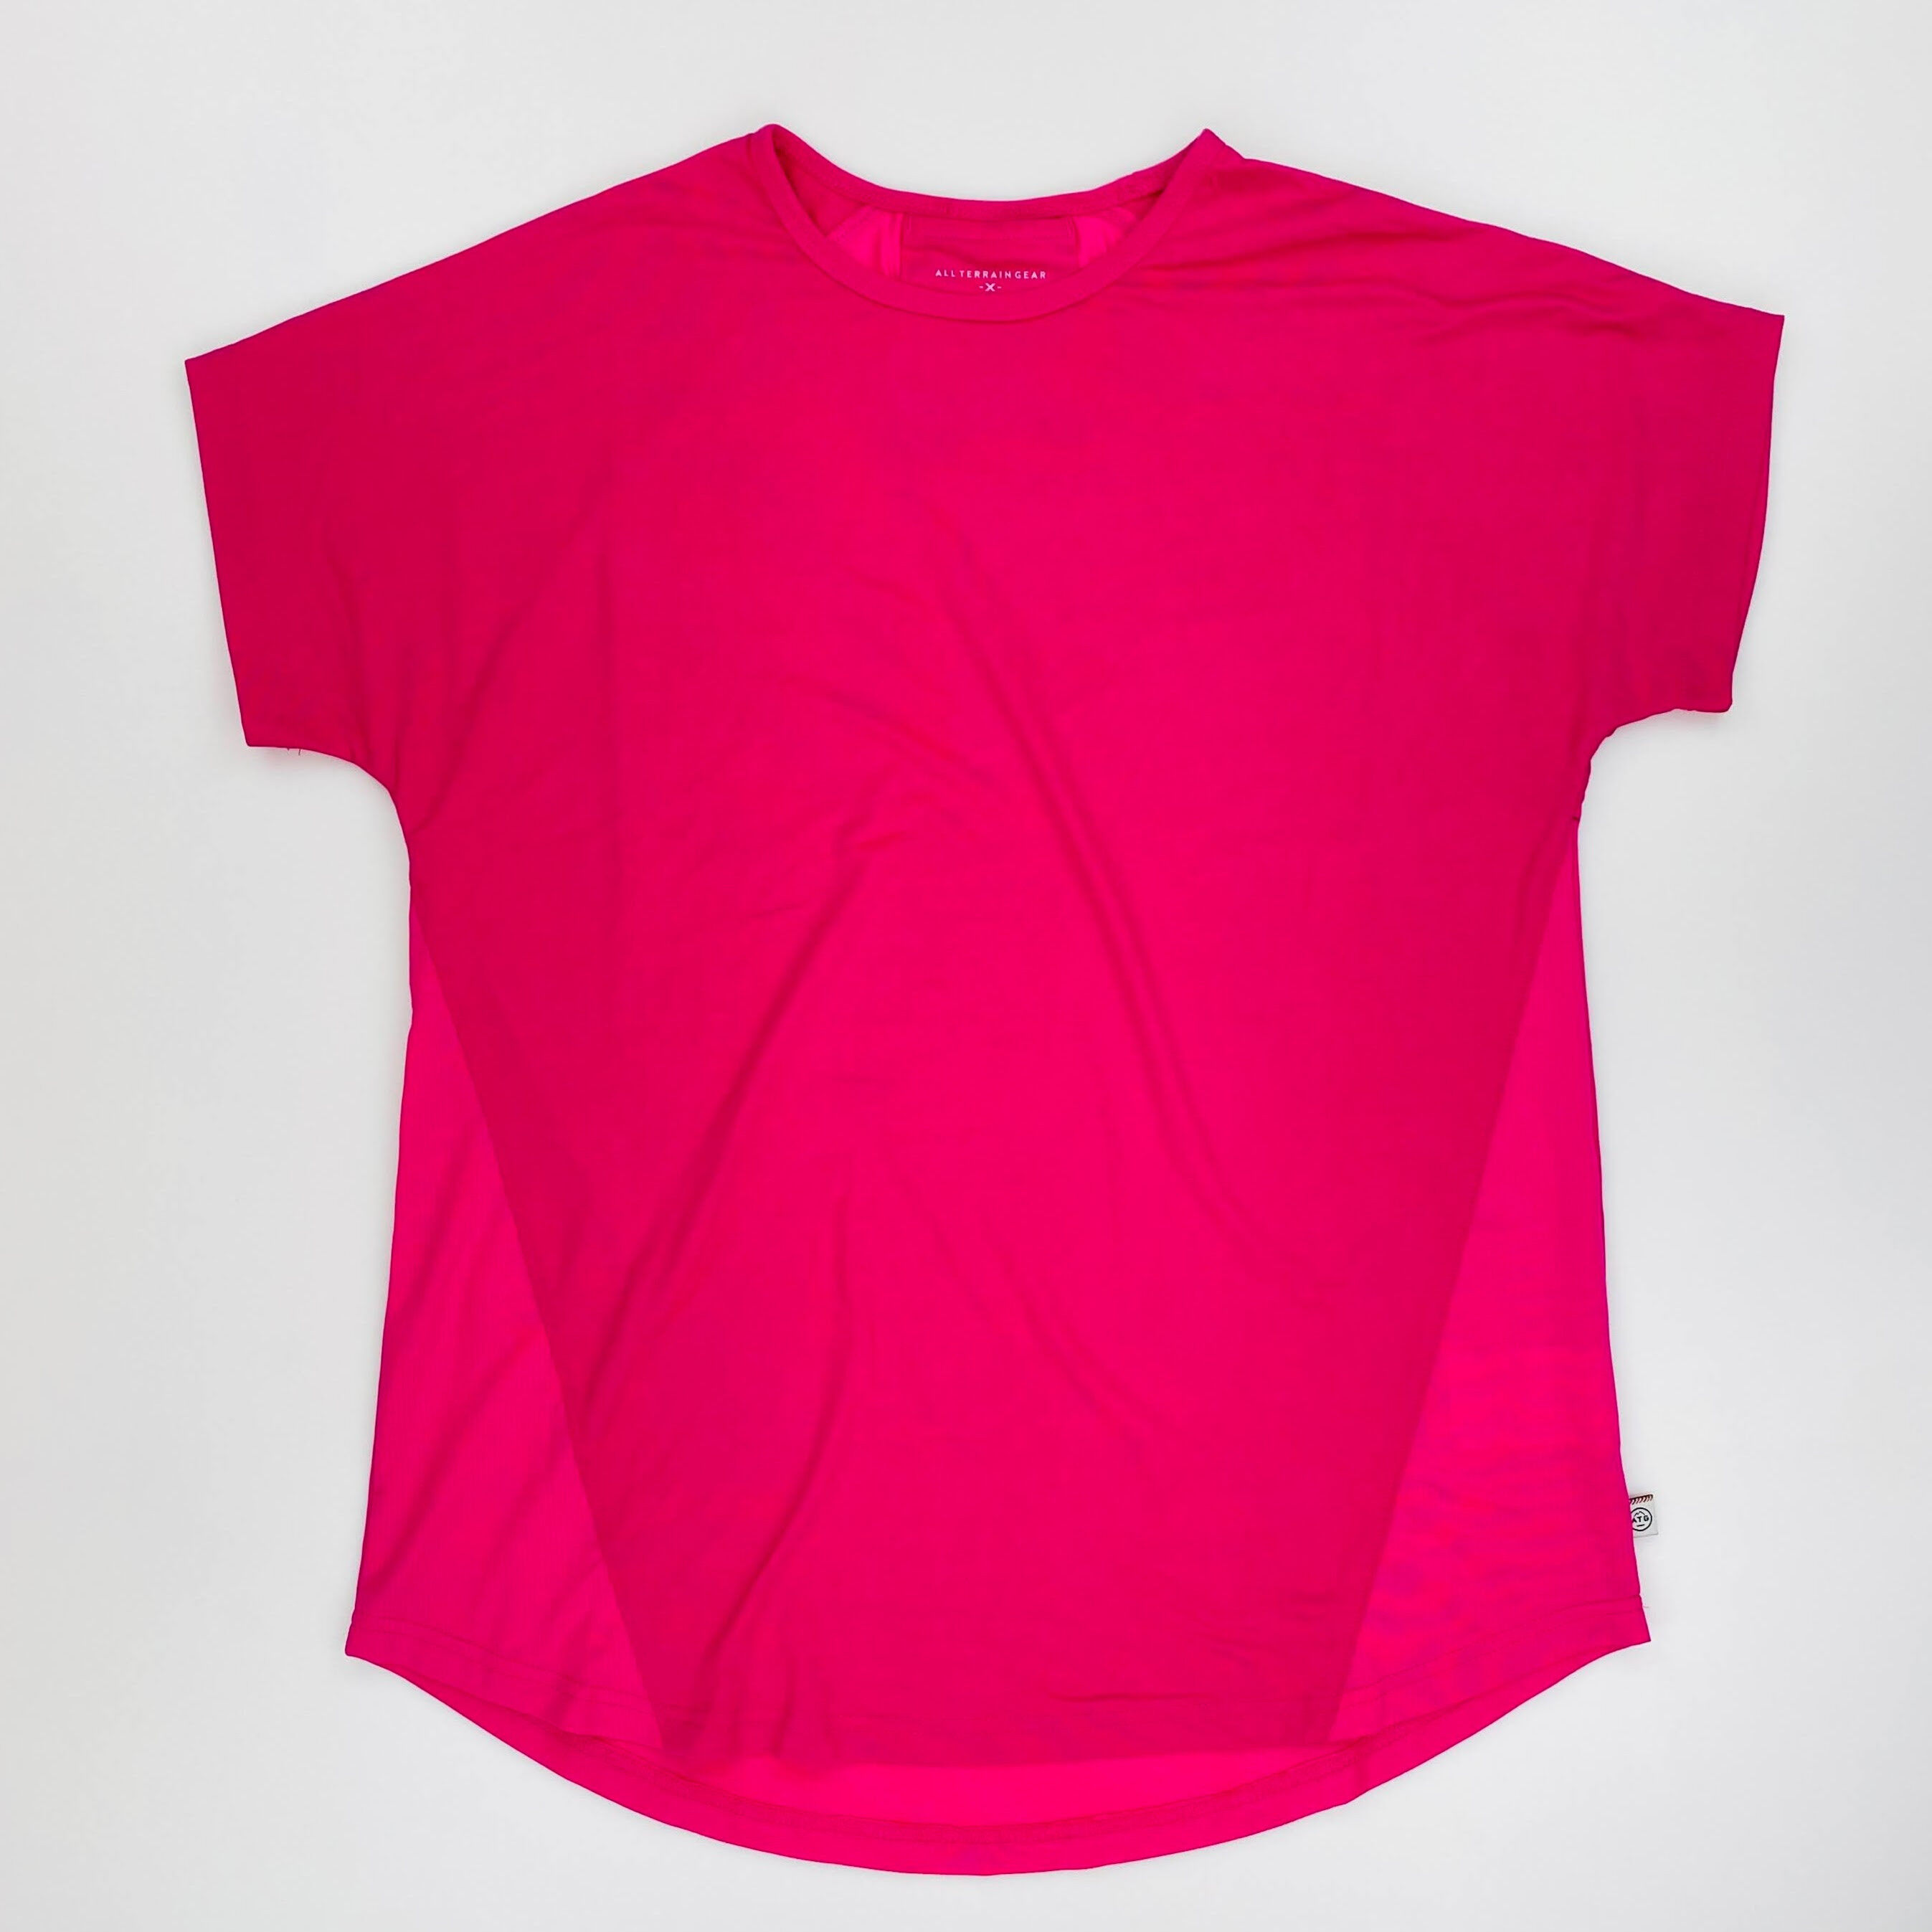 Wrangler Compression Top - Seconde main T-shirt femme - Rose - S | Hardloop